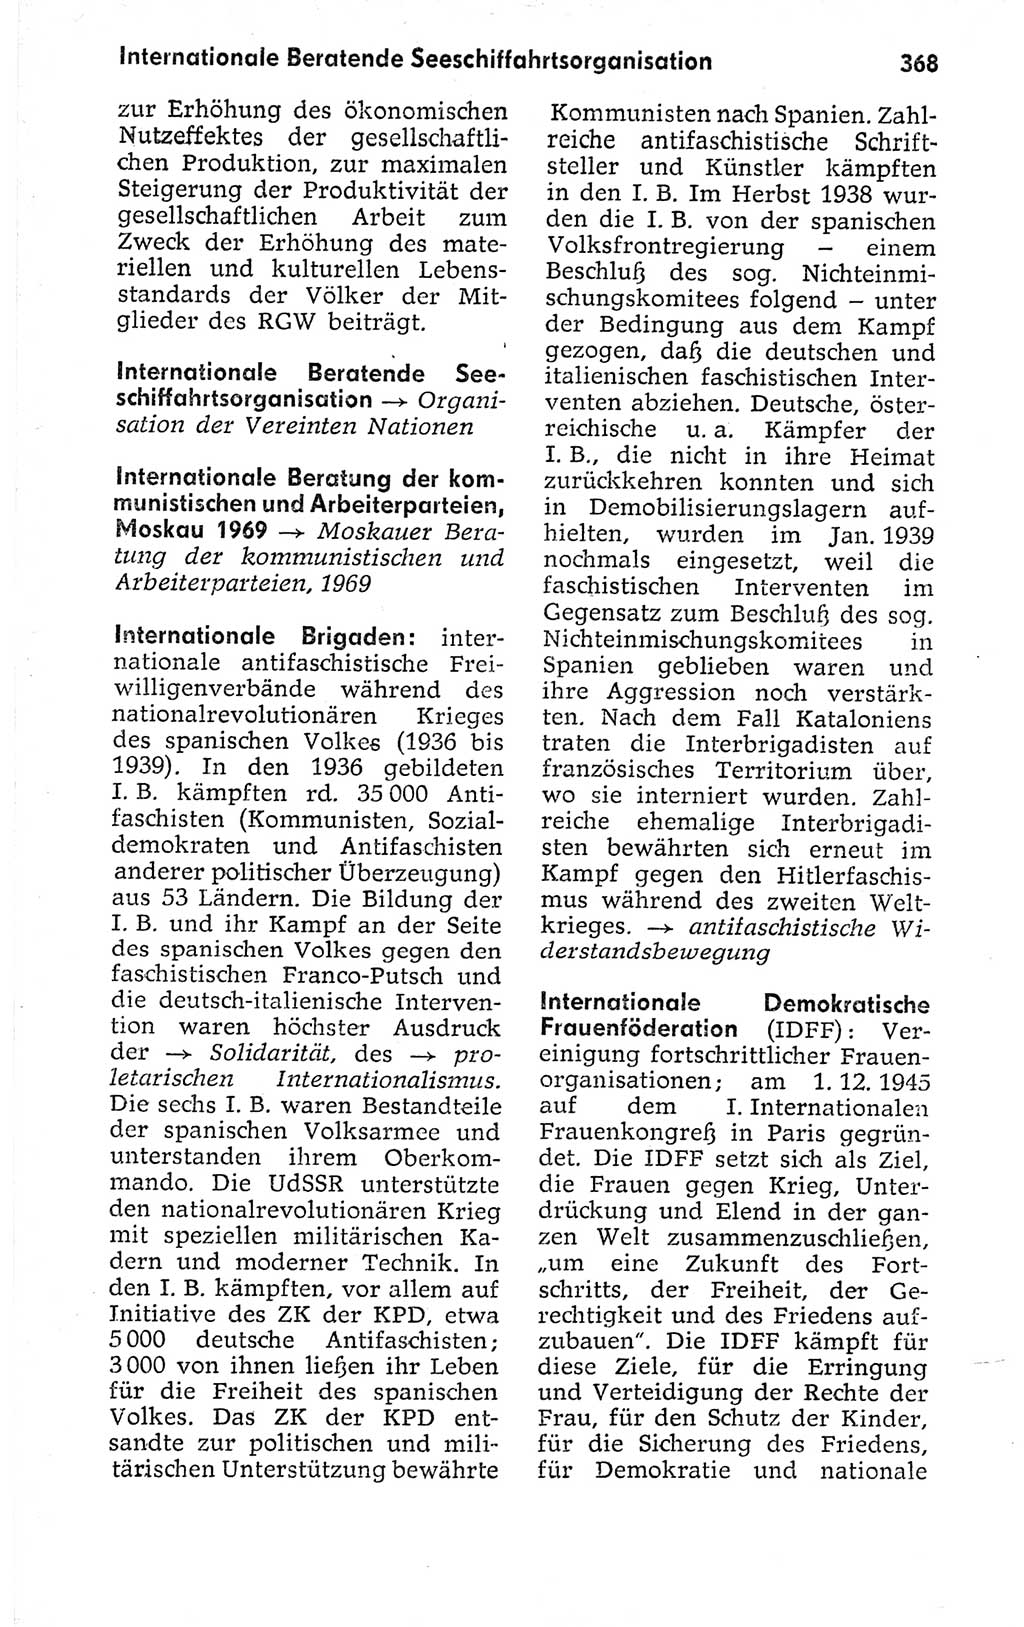 Kleines politisches Wörterbuch [Deutsche Demokratische Republik (DDR)] 1973, Seite 368 (Kl. pol. Wb. DDR 1973, S. 368)